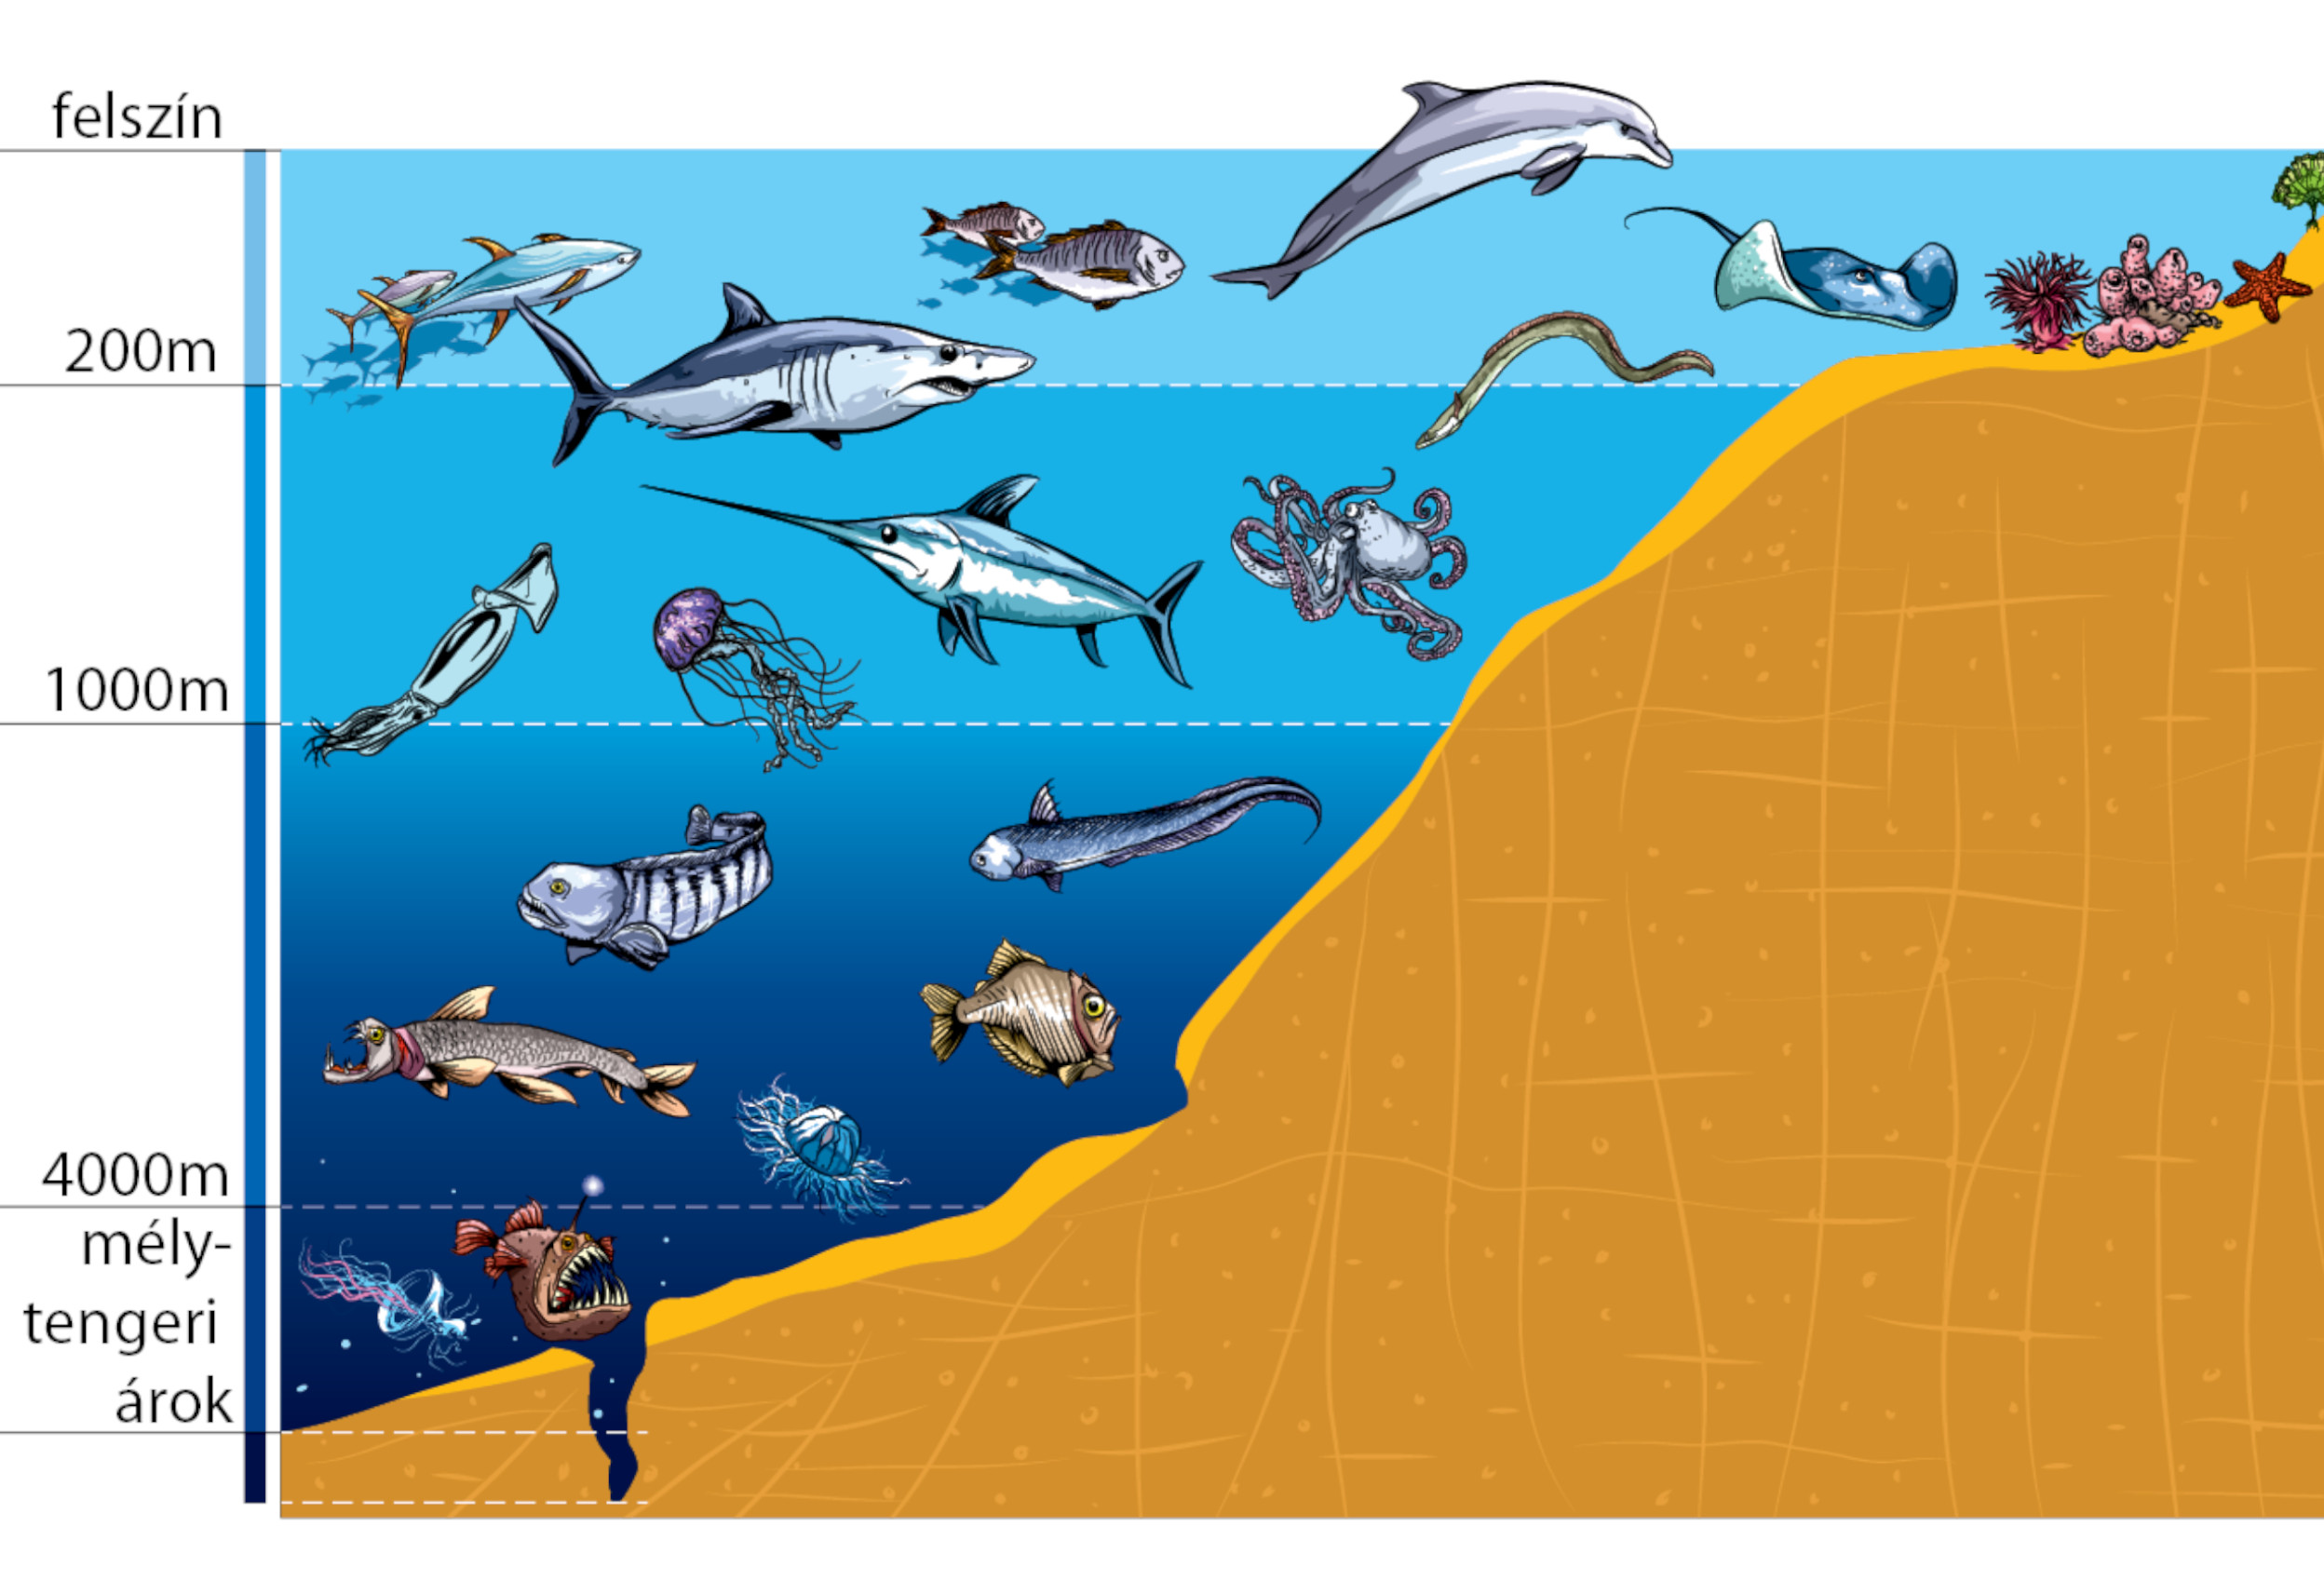 5 слоев океана. Зоны мирового океана и их обитатели. Жизнь организмов в морях и океанах. Слои океана. Обитатели моря по глубине.